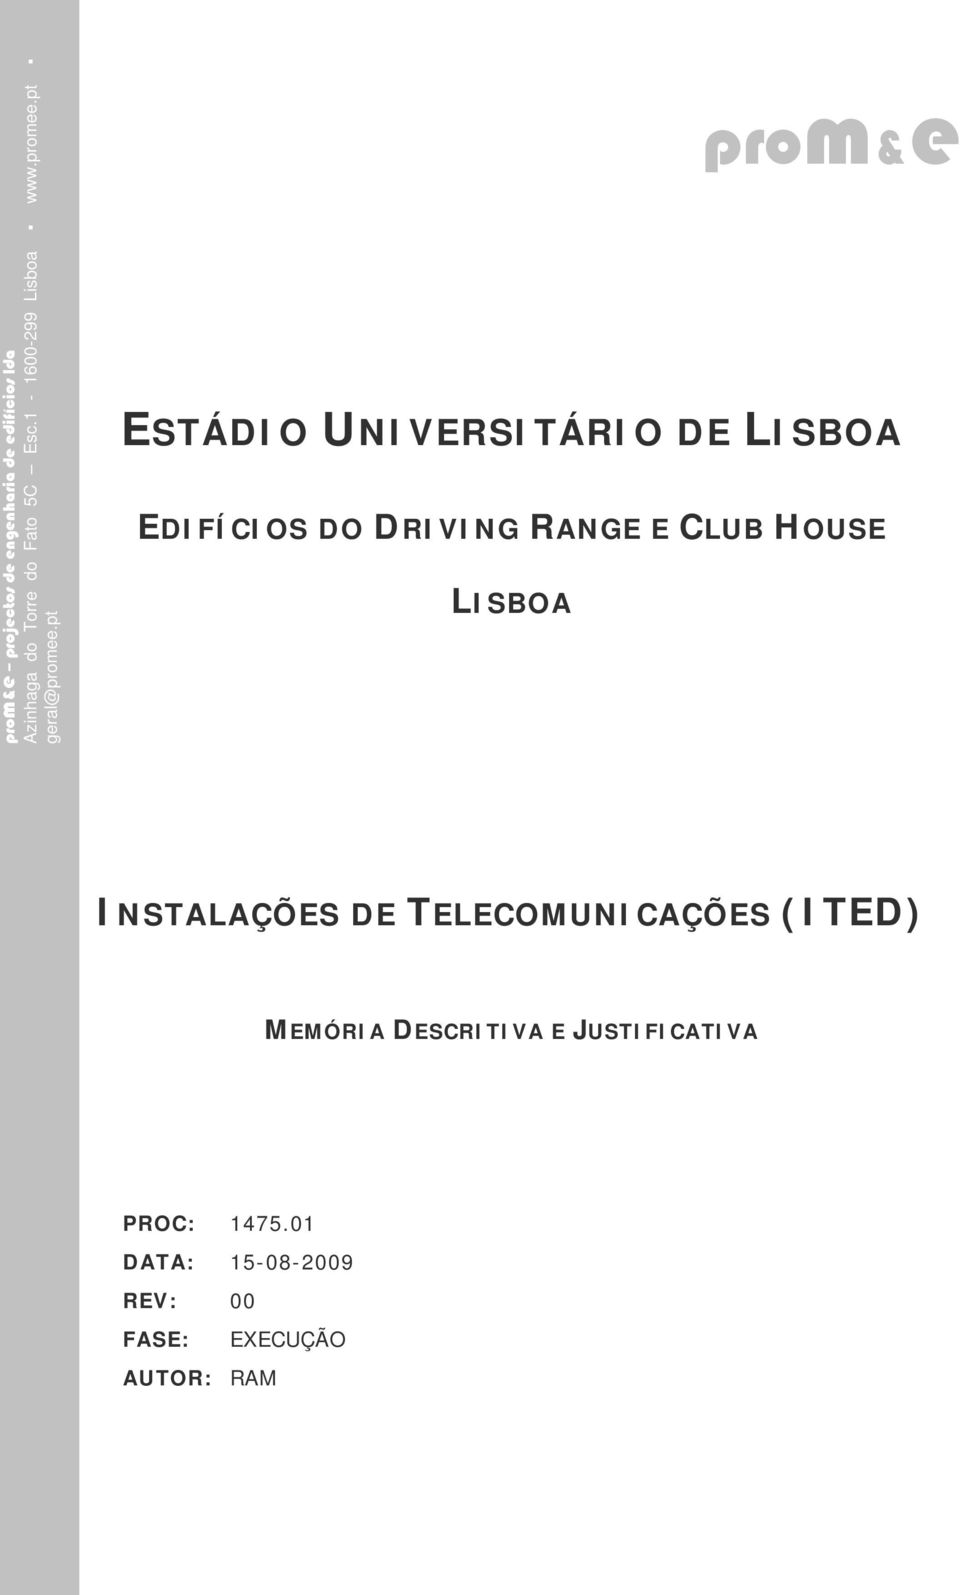 pt ESTÁDIO UNIVERSITÁRIO DE LISBOA EDIFÍCIOS DO DRIVING RANGE E CLUB HOUSE